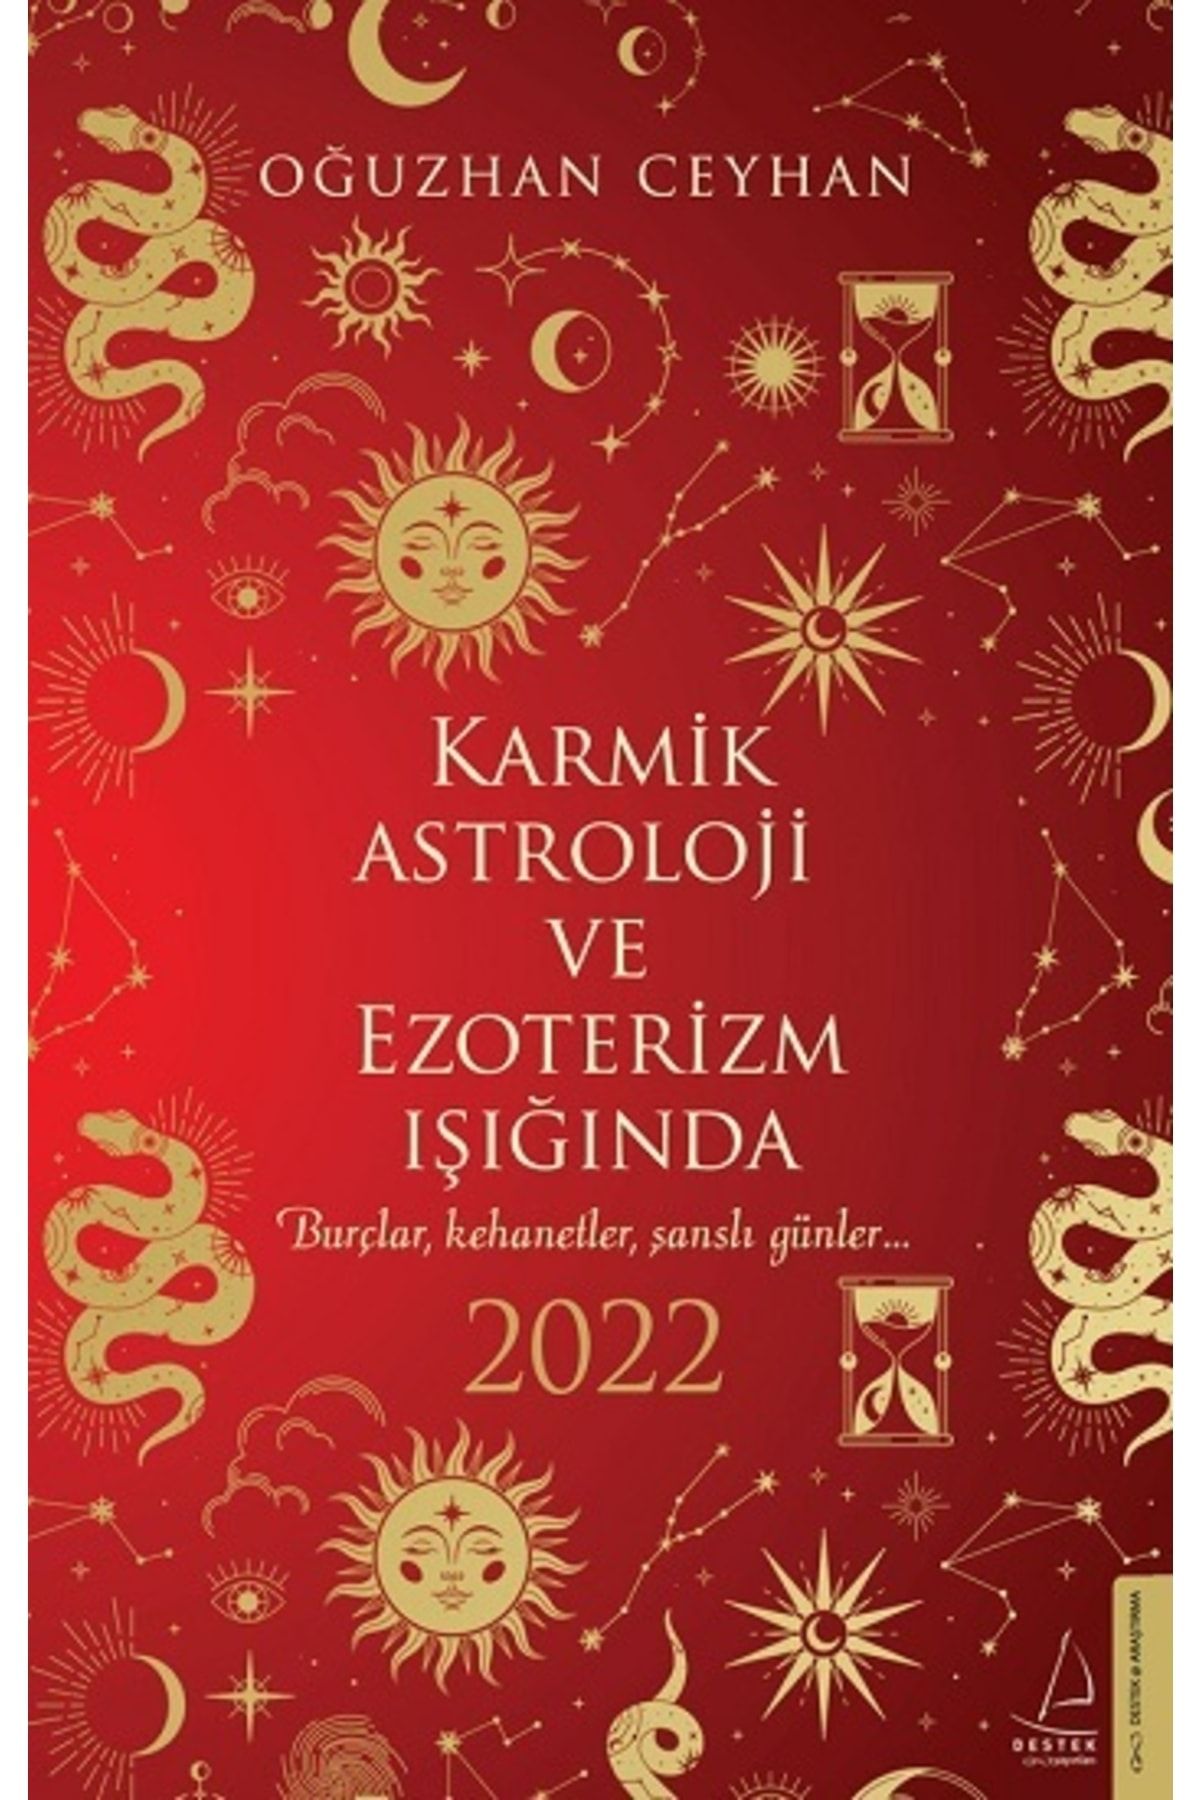 Destek Yayınları Karmik Astroloji Ve Ezoterizm Işığında 2022 & Oğuzhan Ceyhan